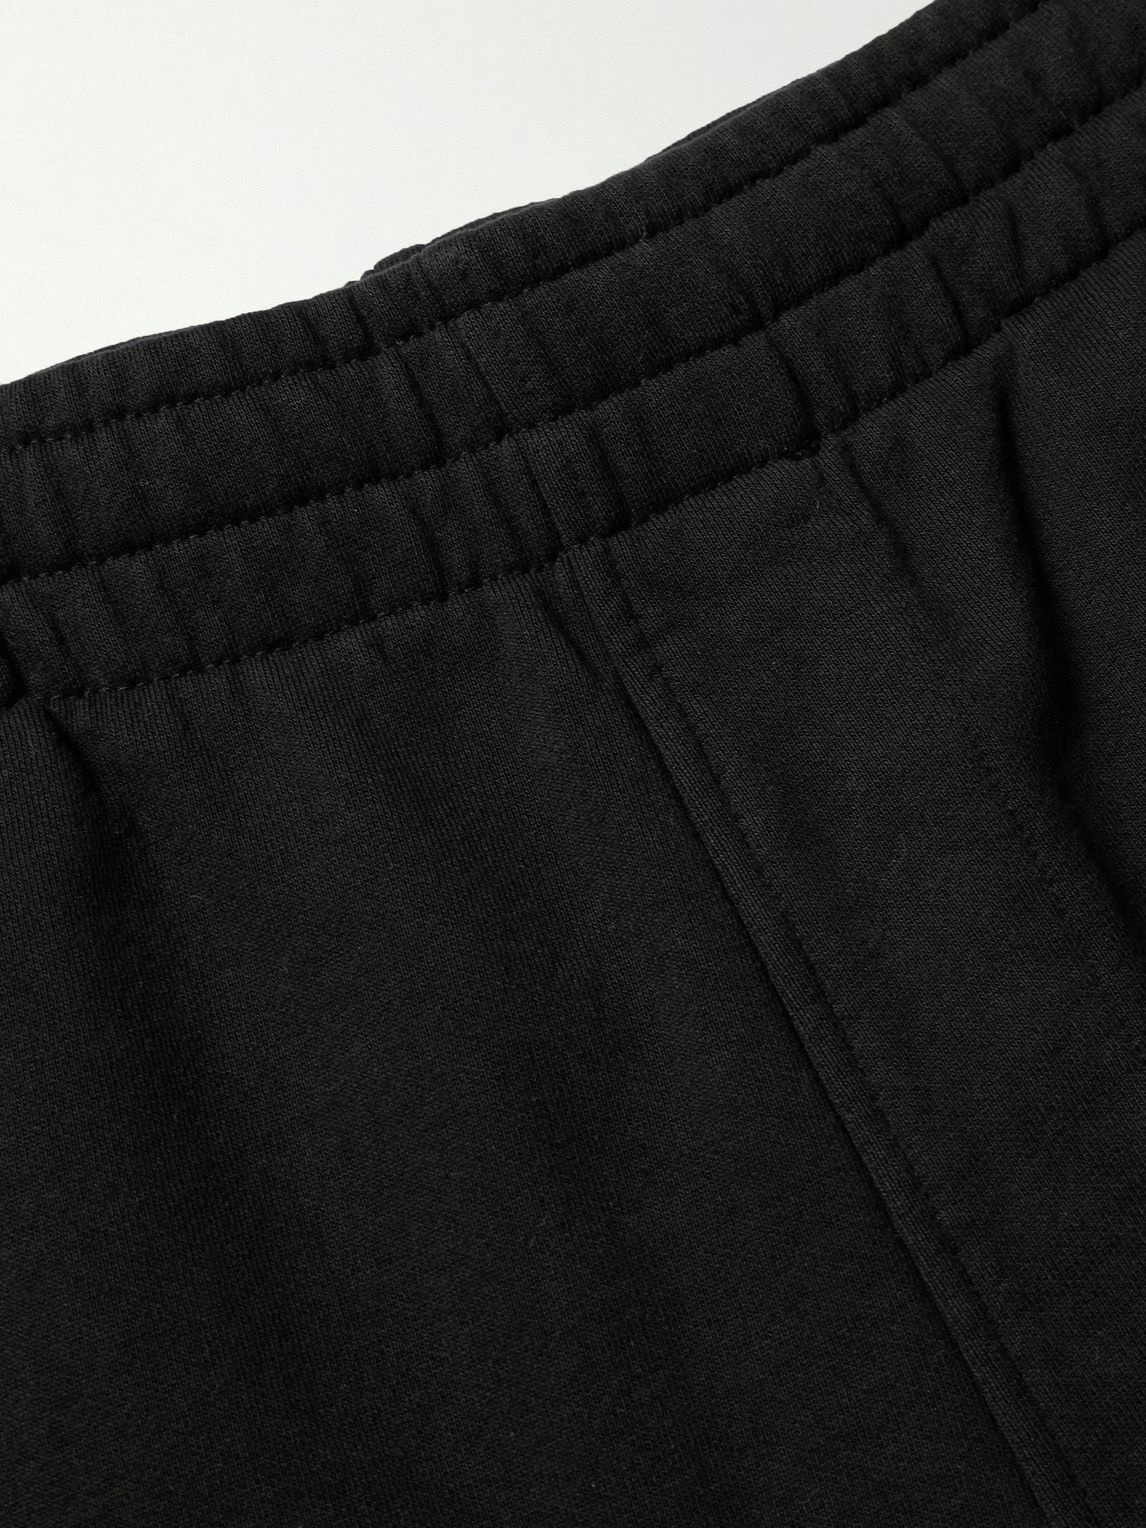 Maison Kitsuné - Logo-Appliquéd Cotton-Jersey Sweatpants - Black Maison ...